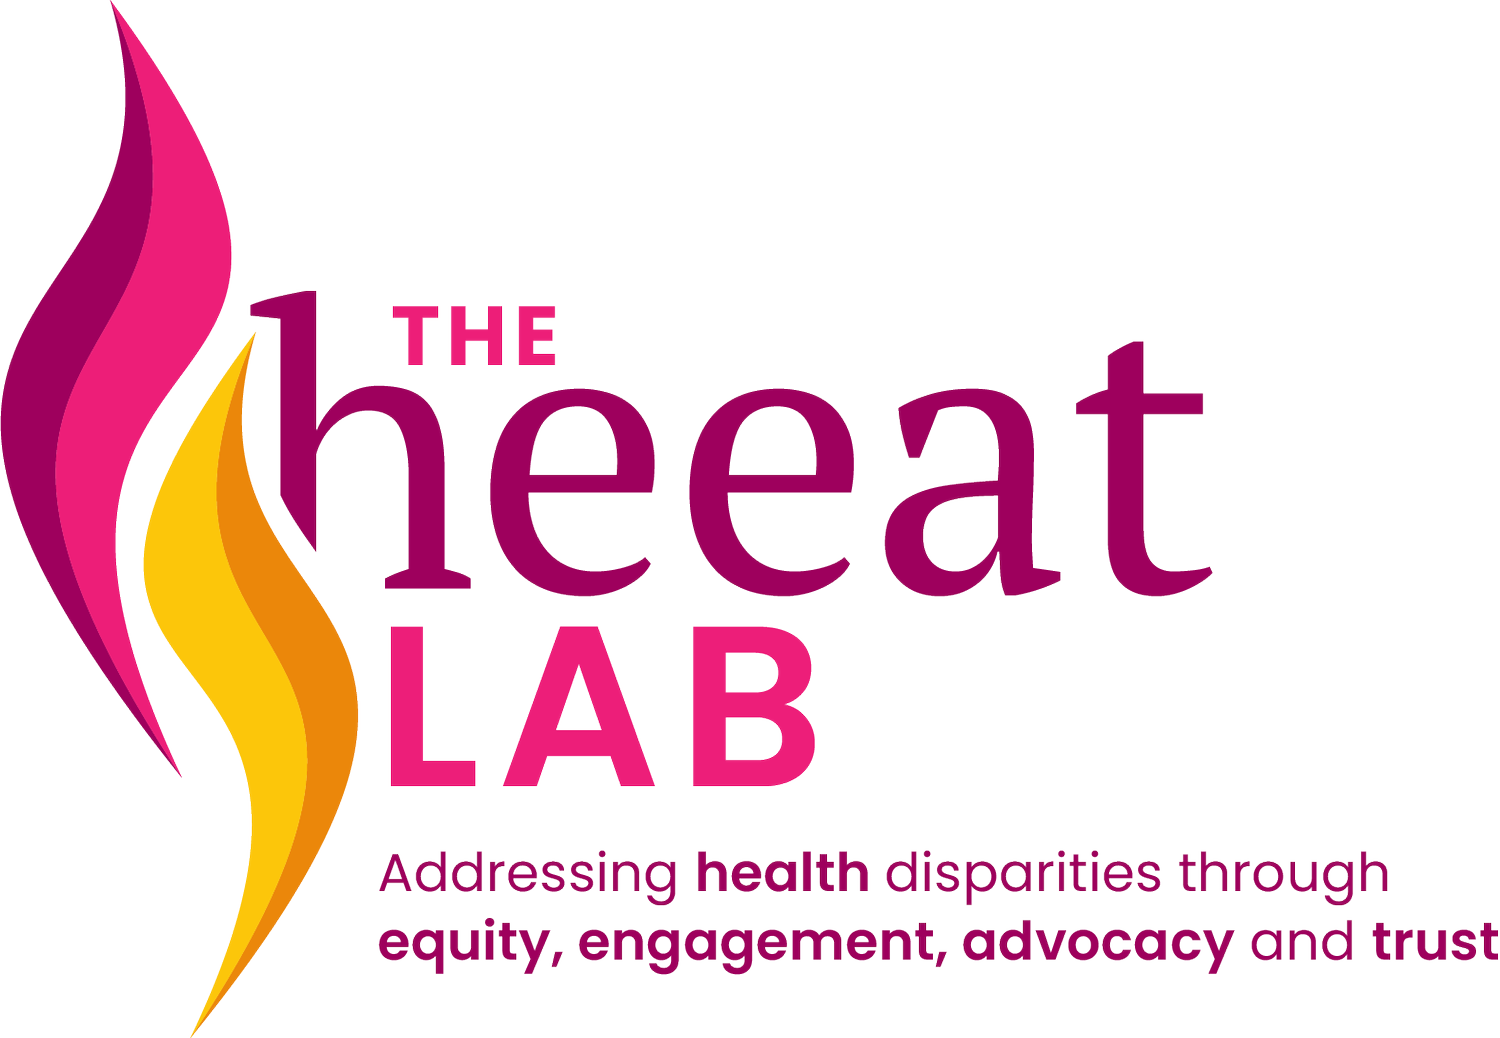 HEEAT Lab